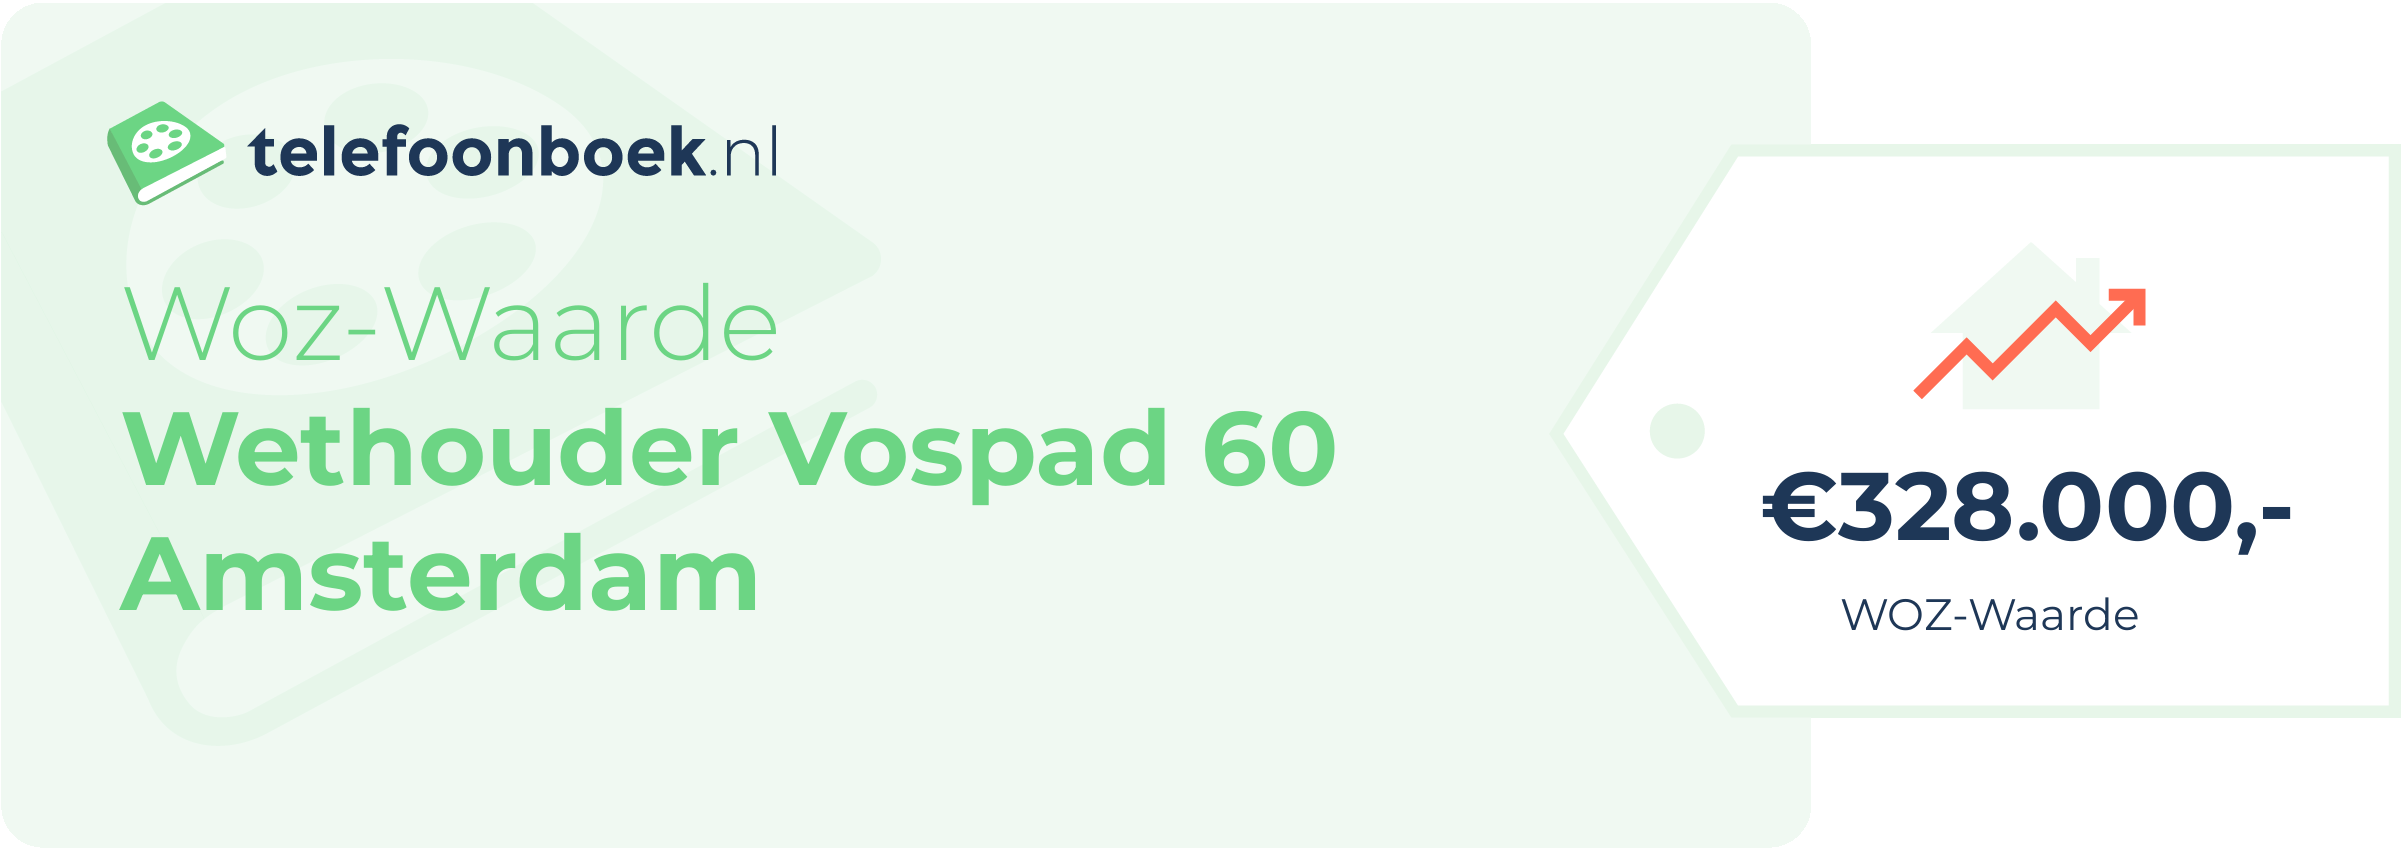 WOZ-waarde Wethouder Vospad 60 Amsterdam